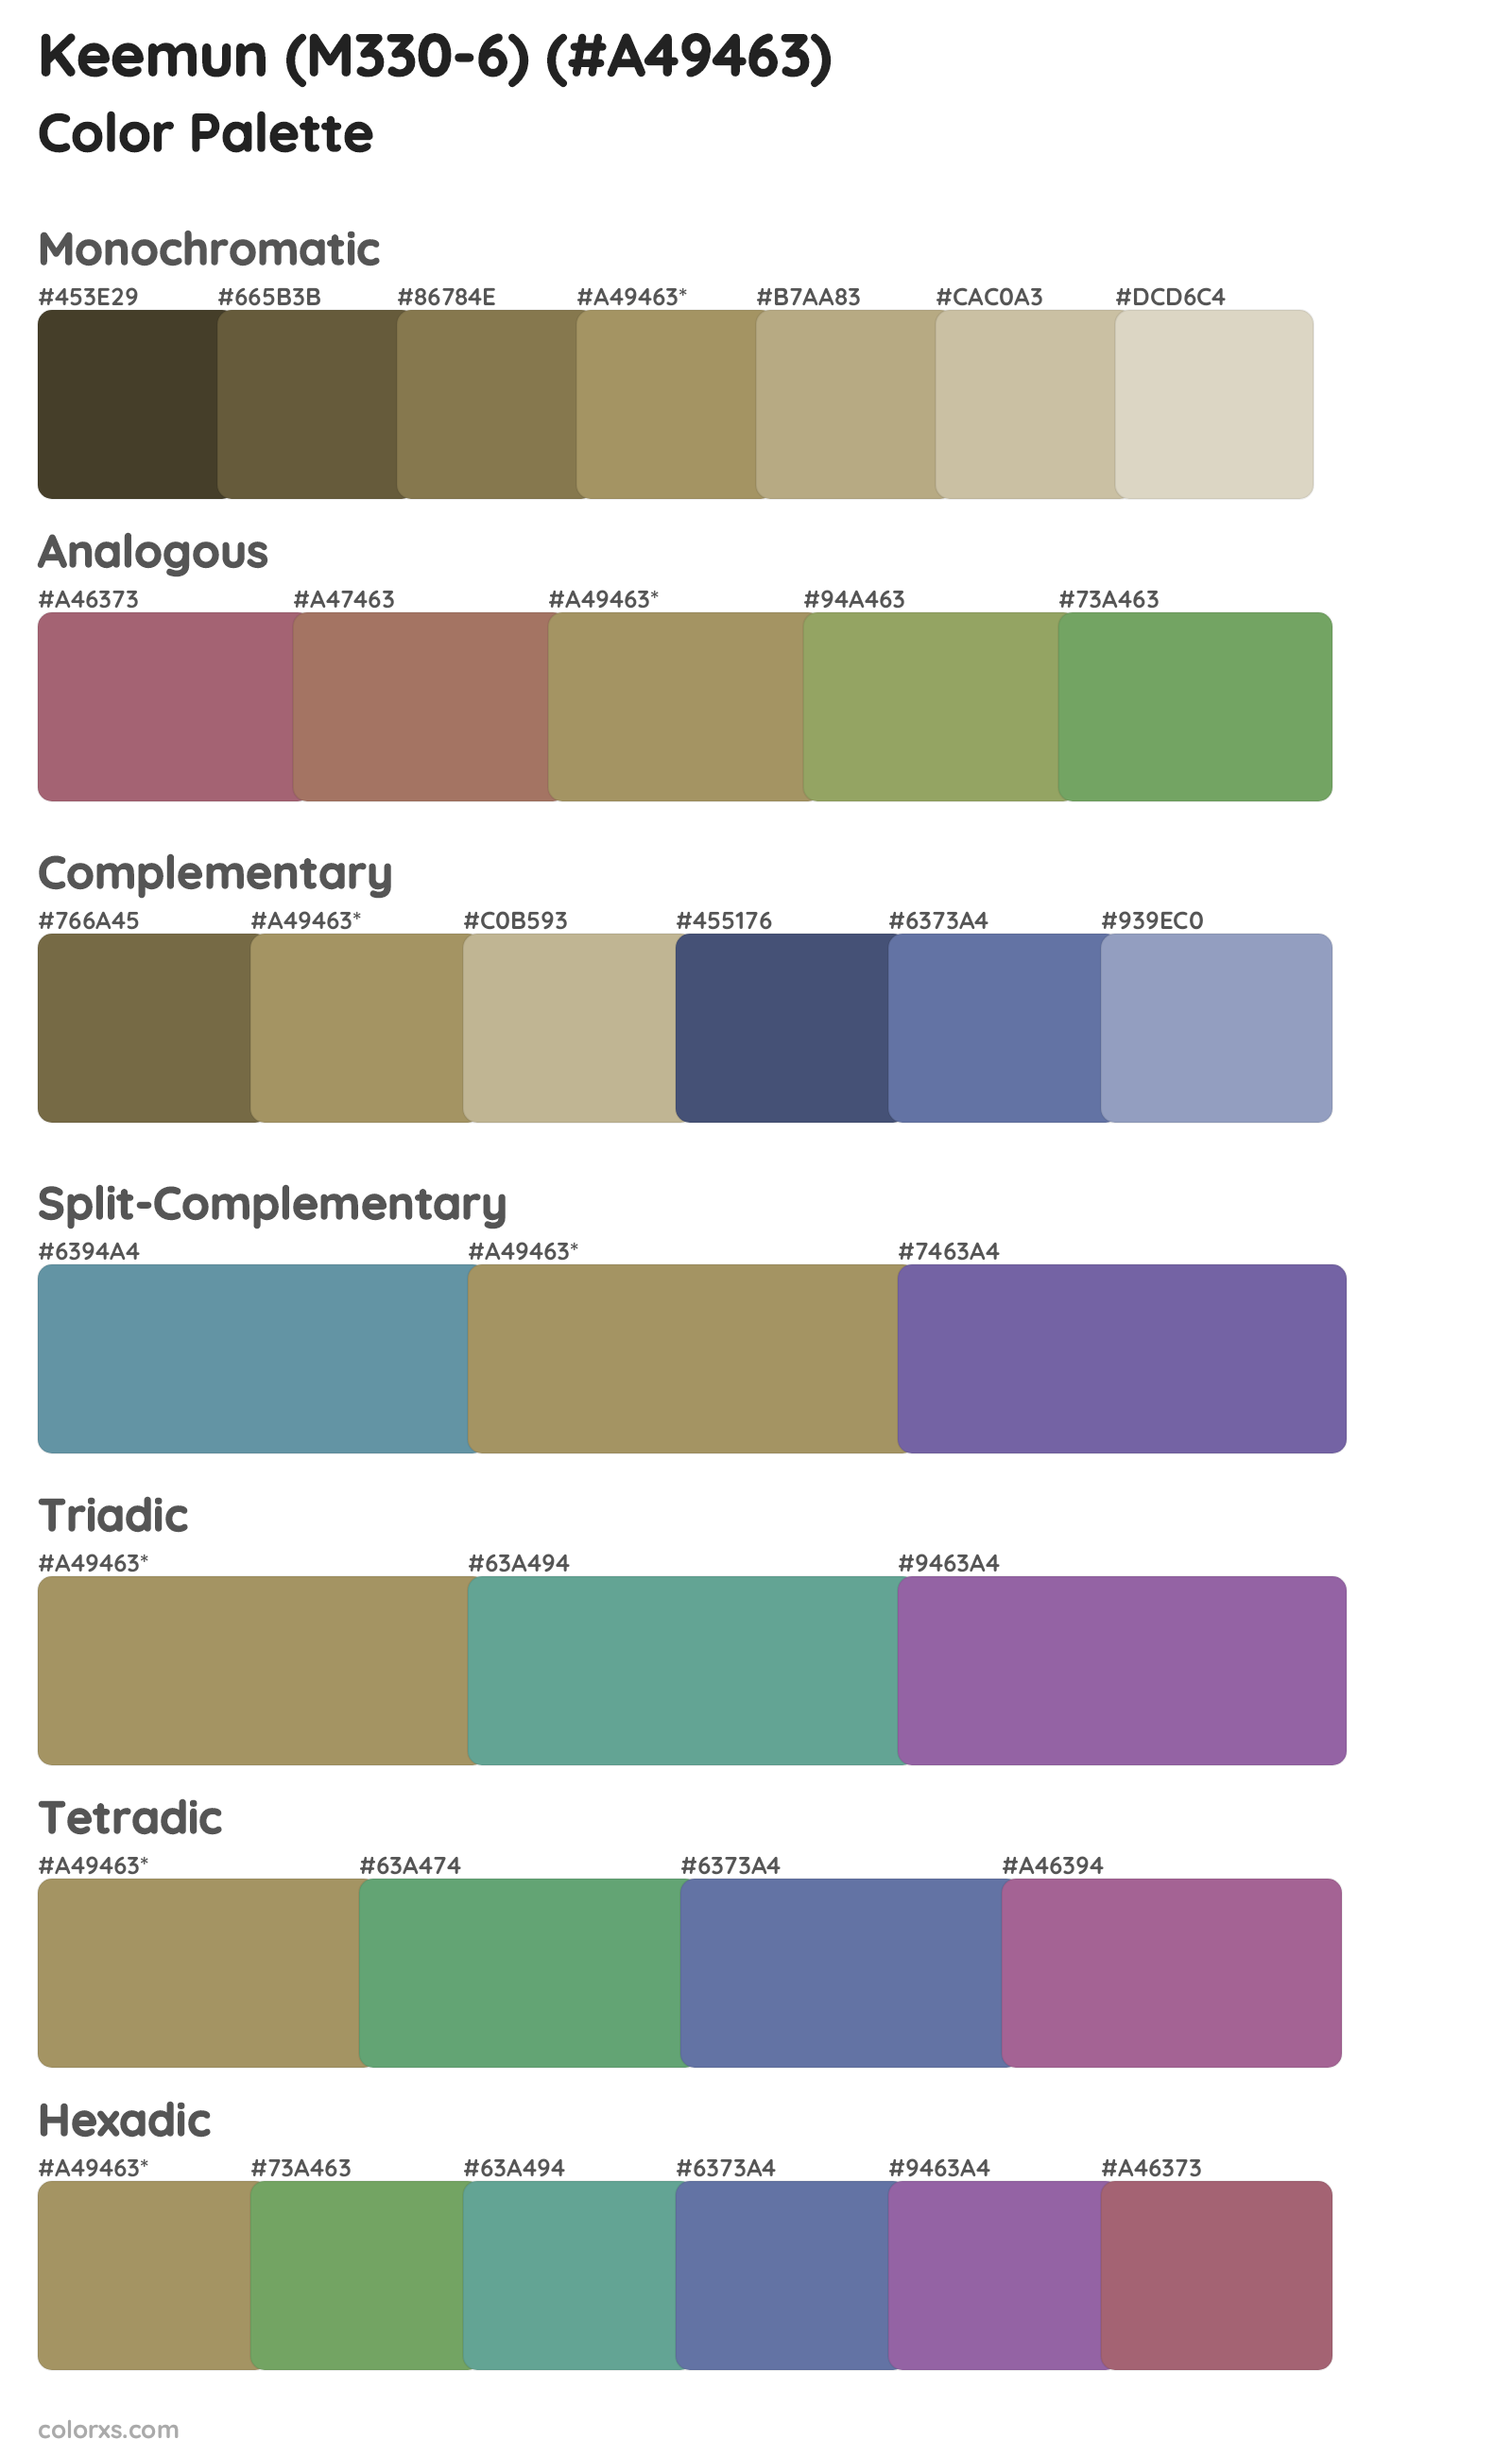 Keemun (M330-6) Color Scheme Palettes